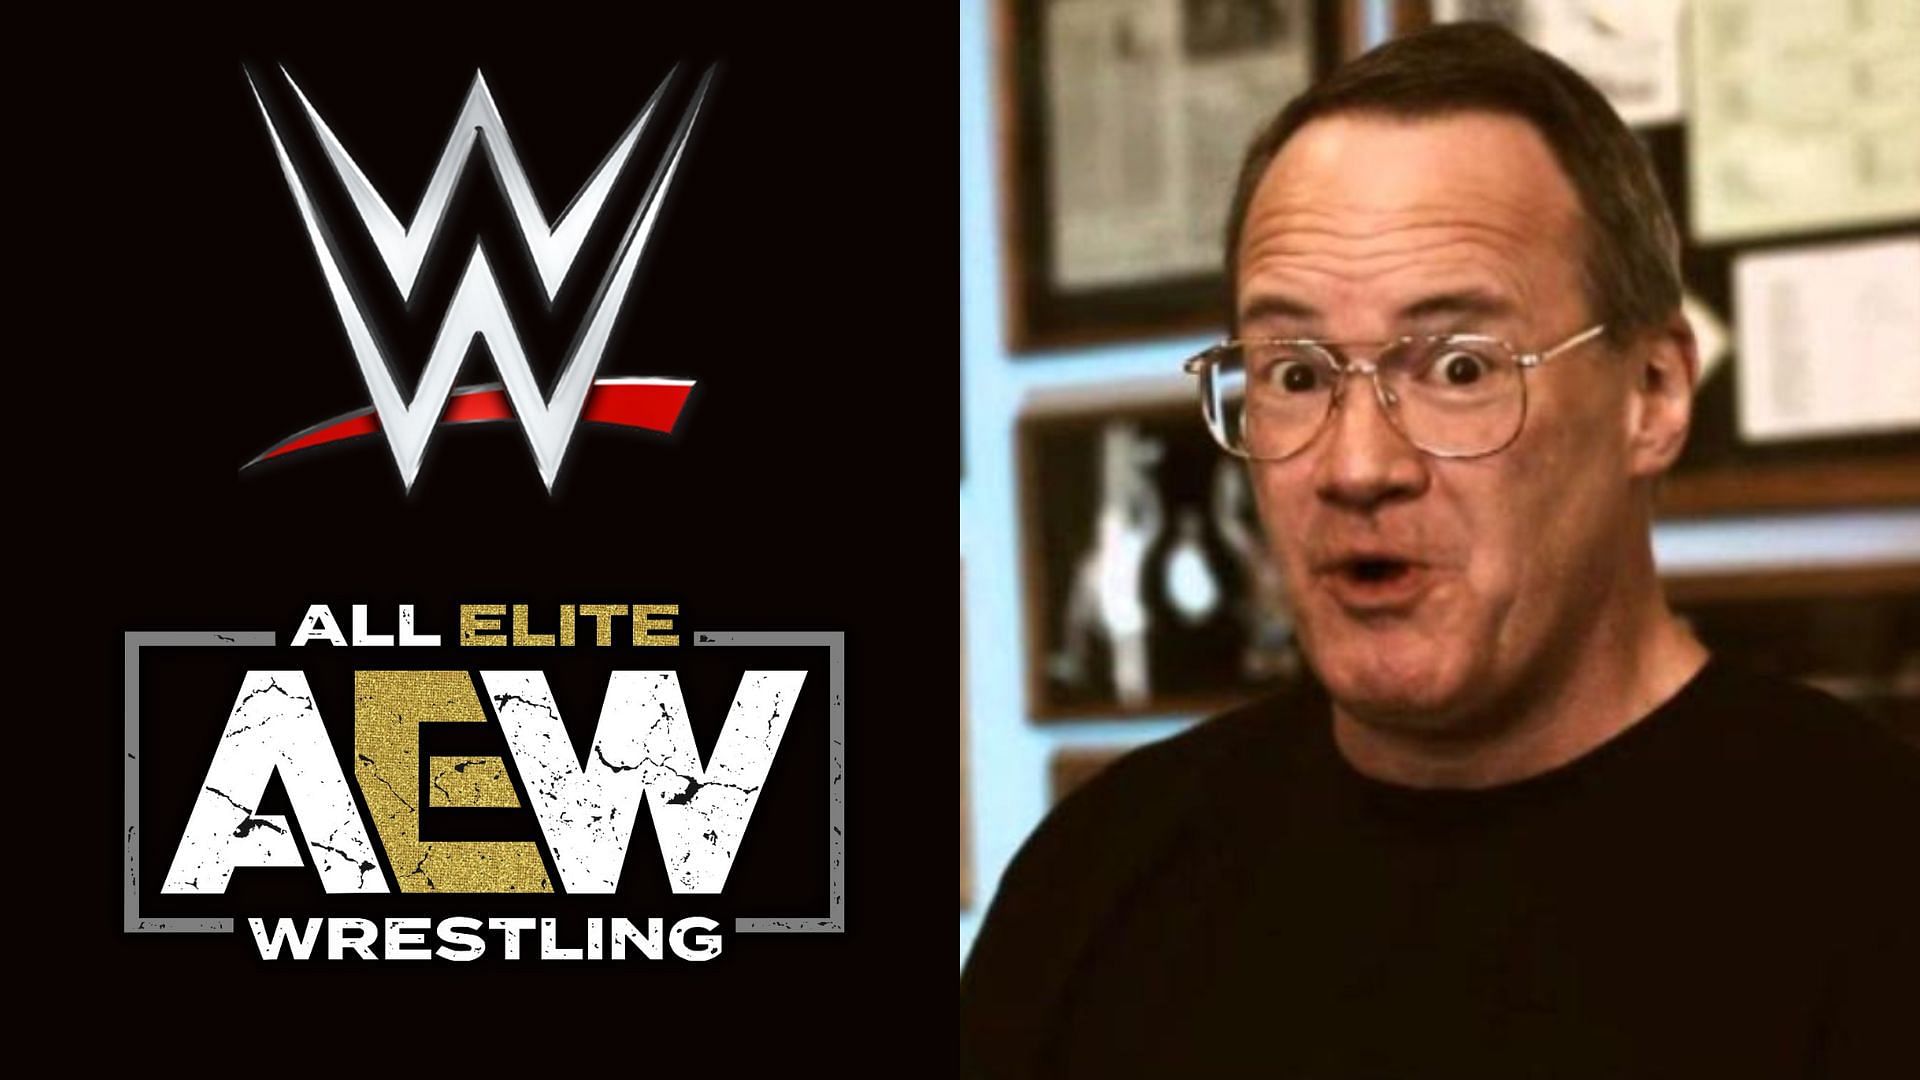 AEW WWE logo (left), Jim Cornette (right)